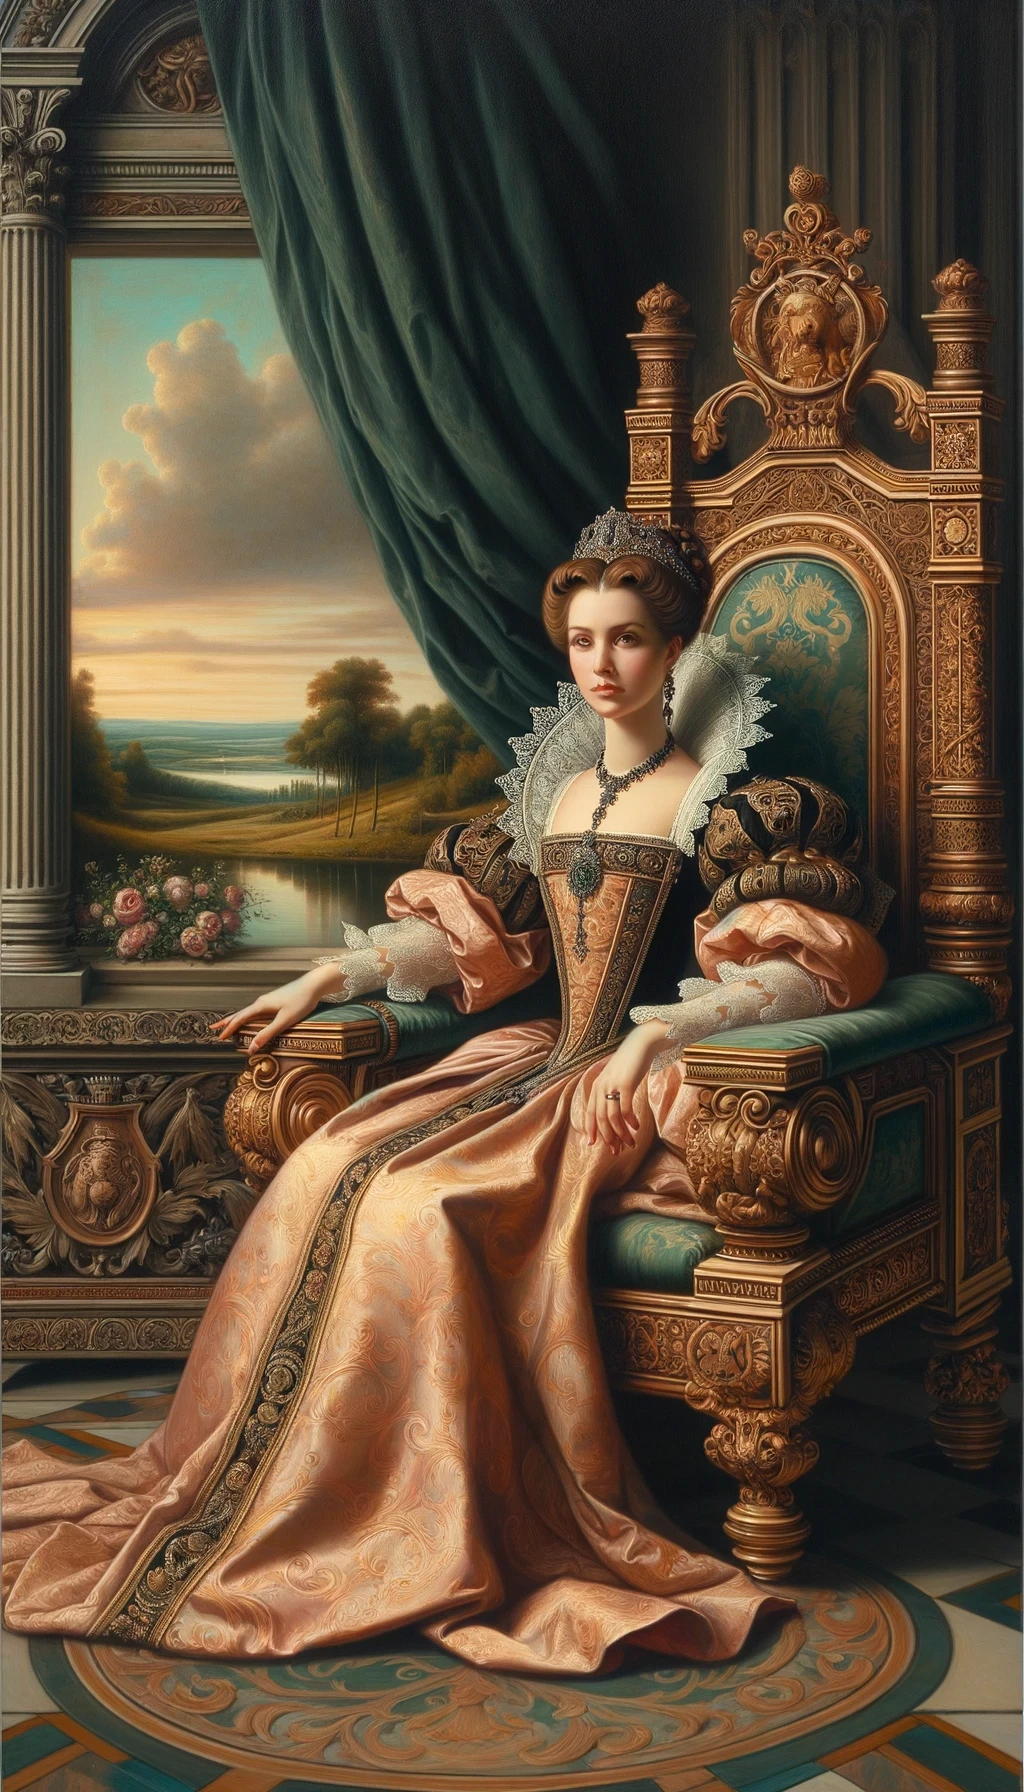 Um retrato detalhado no estilo renascentista de uma mulher nobre, vestida com um traje elegante da época, sentada em um trono ornamentado, com um olhar pensativo e uma paisagem clássica ao fundo.